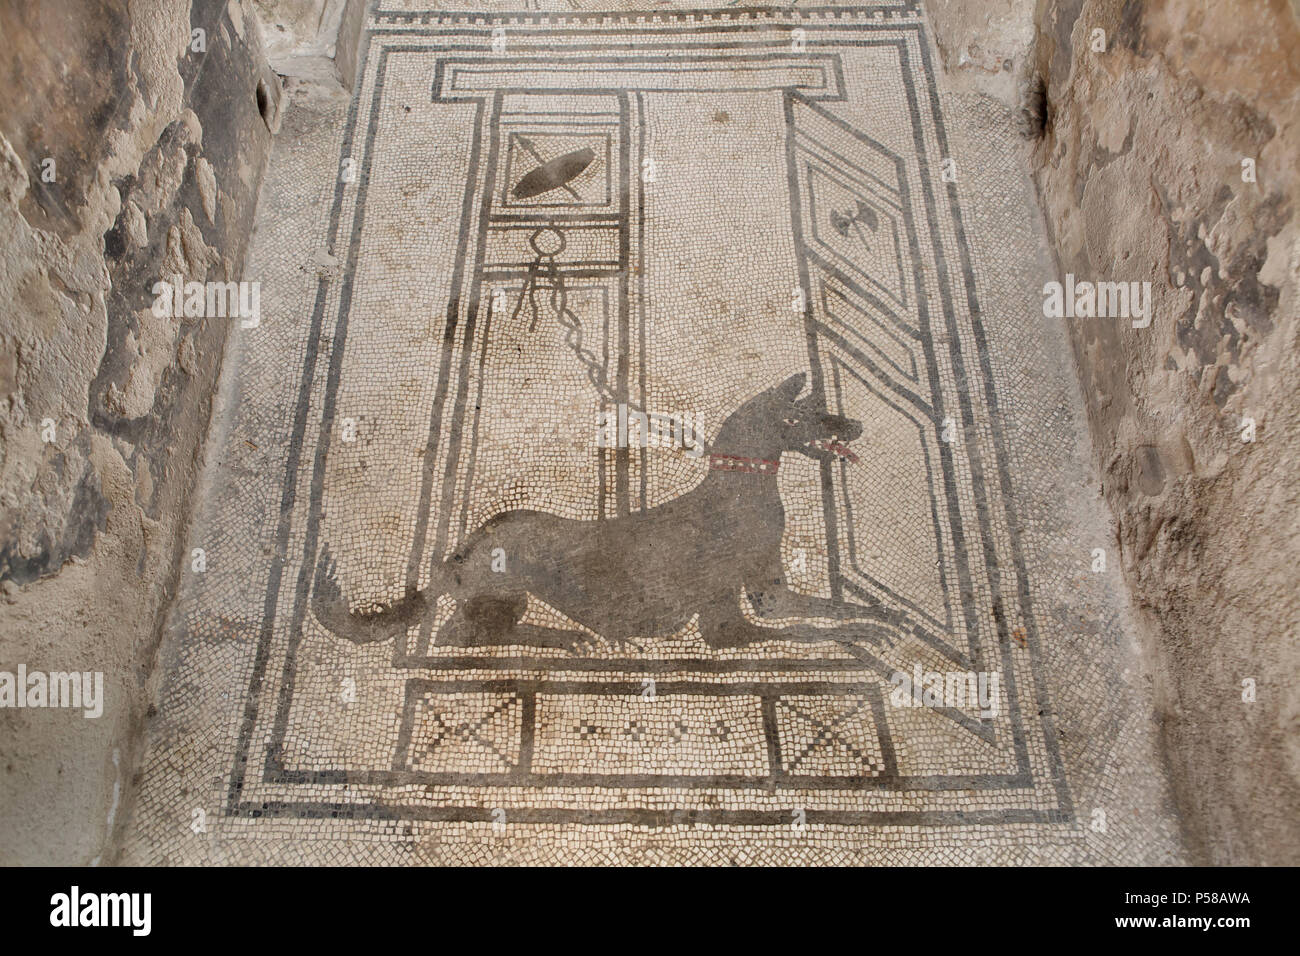 Perro representado en el mosaico romano de Cave canem (Cuidado con el perro) en la Casa de Paquius Proculus (Casa di Paquius Proculus) en el sitio arqueológico de Pompeya (Pompei) cerca de Nápoles, Campania, Italia. Foto de stock